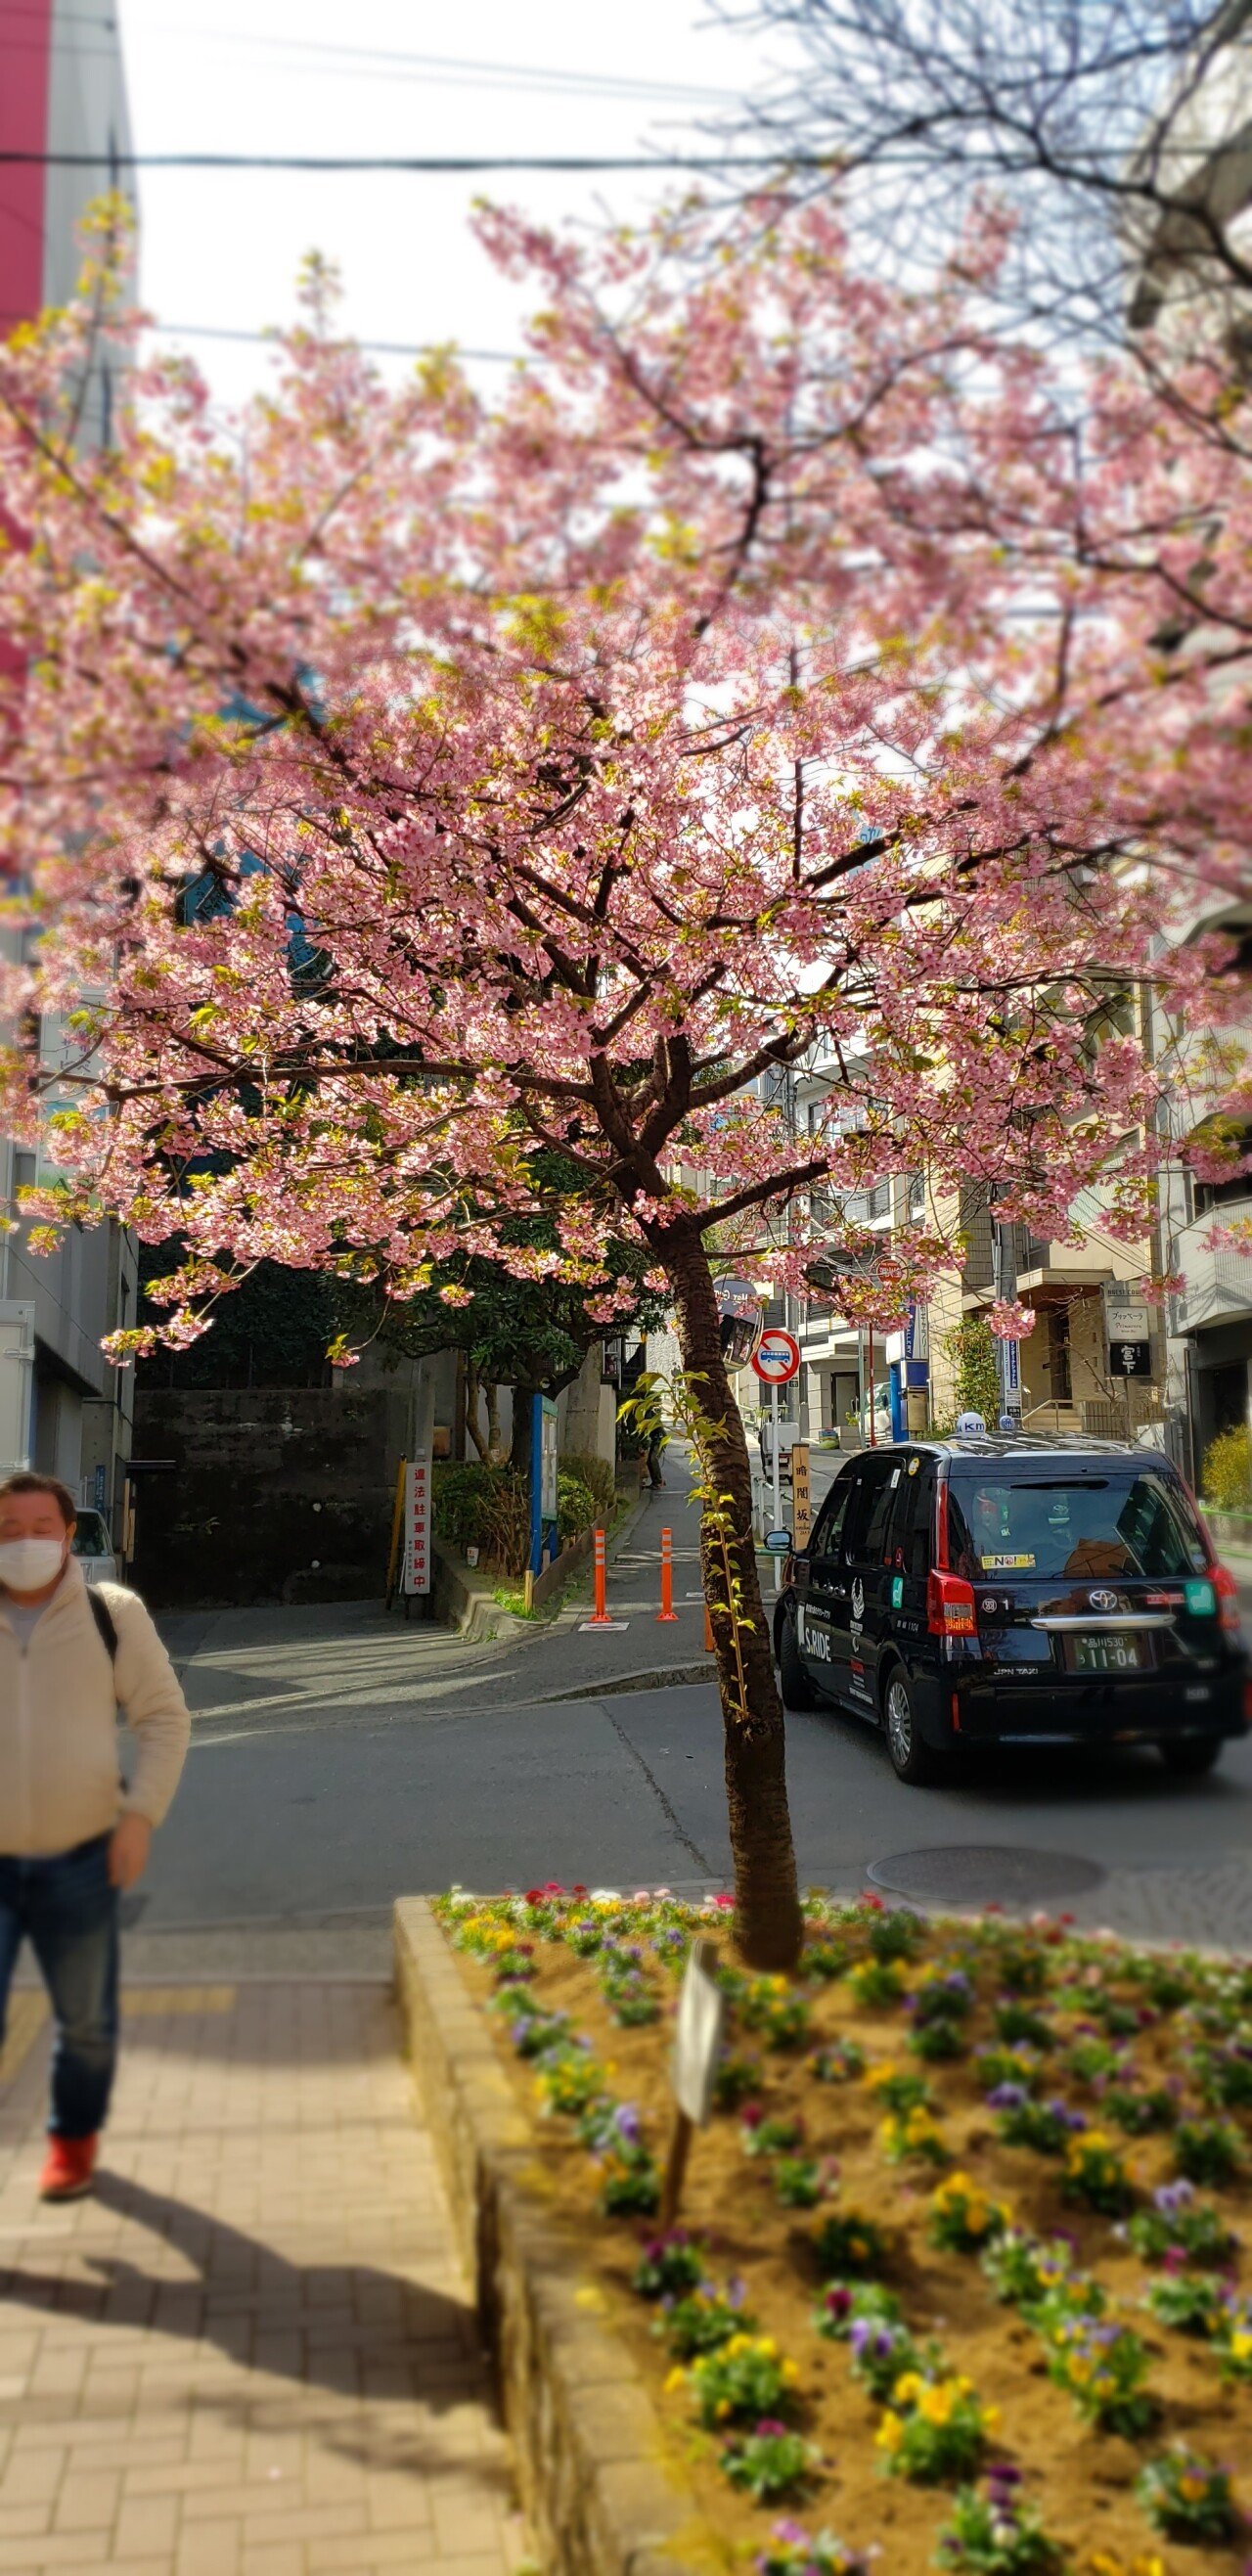 20210227_113051.jpg <도쿄 외노자> 봄날 기운 물씬 느껴지는 도쿄 길거리 풍경.jpg